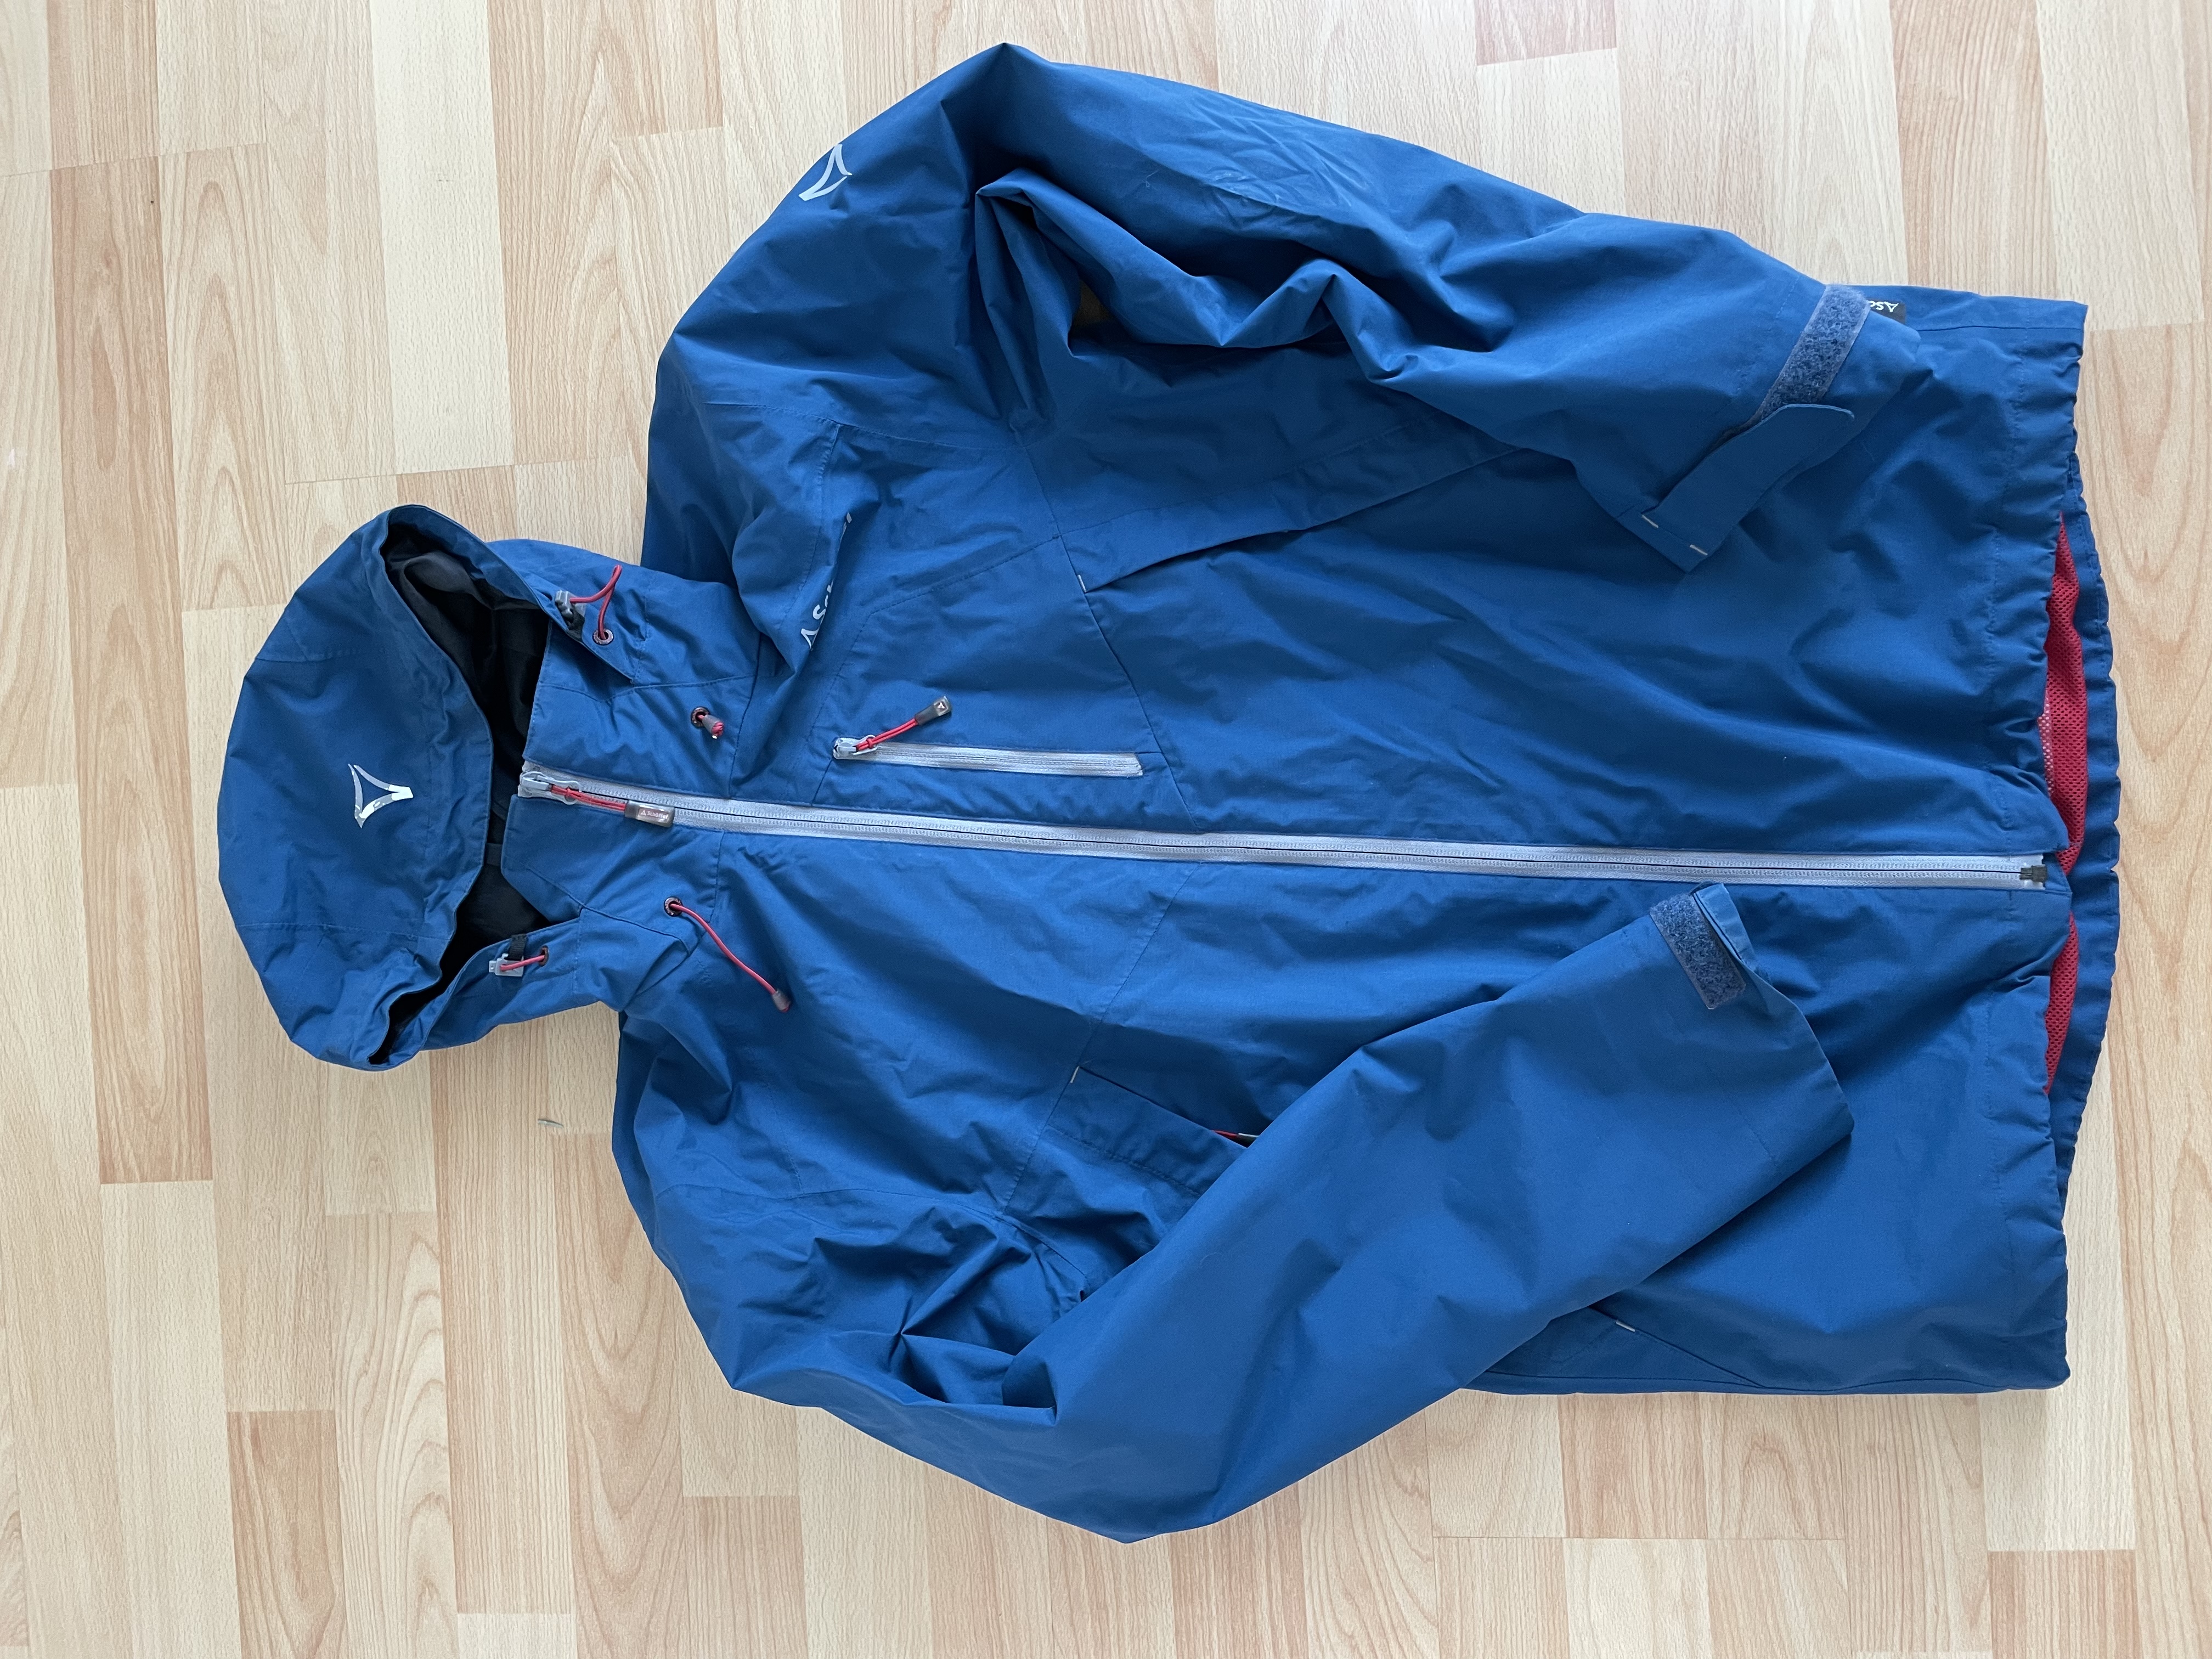 Rain jacket/ transitional jacket